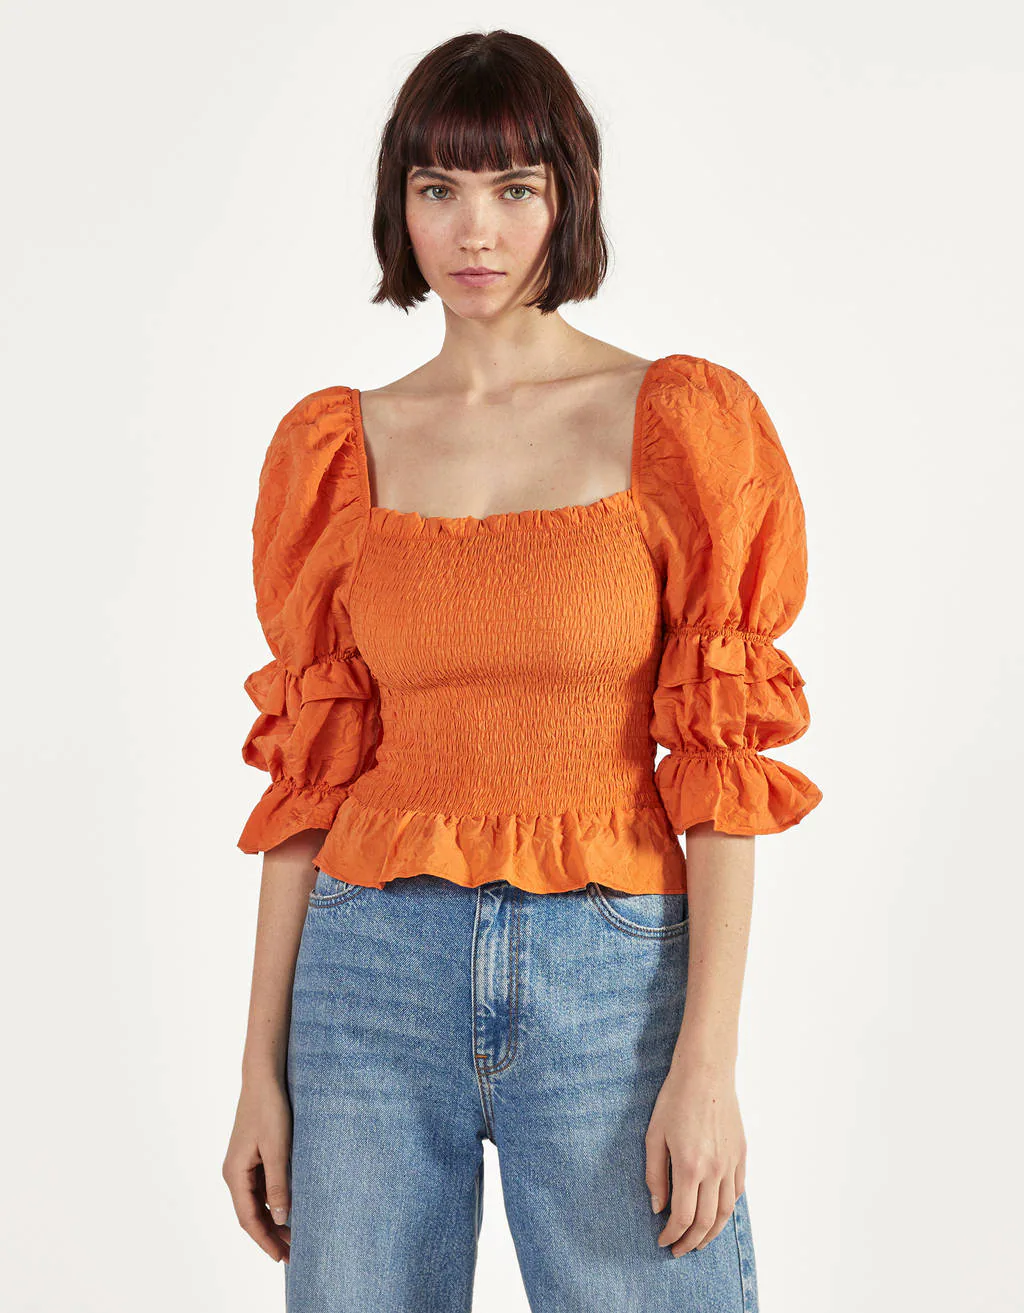 Blusas y camisas baratas para verano: la naranja